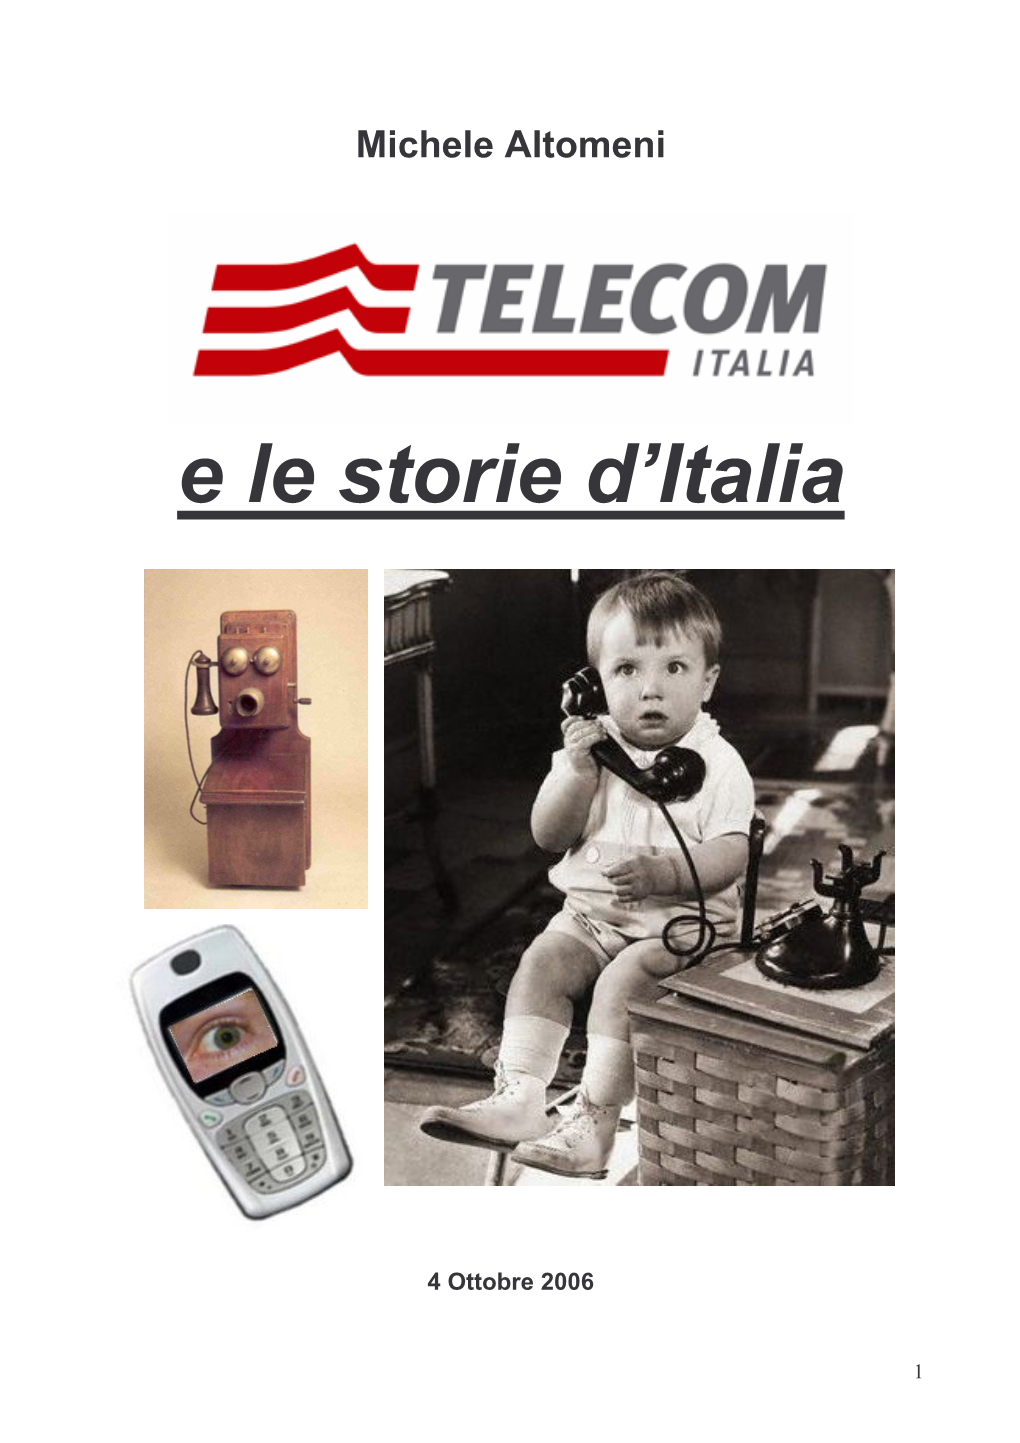 Redaz Telecom E Le Storia D'italia